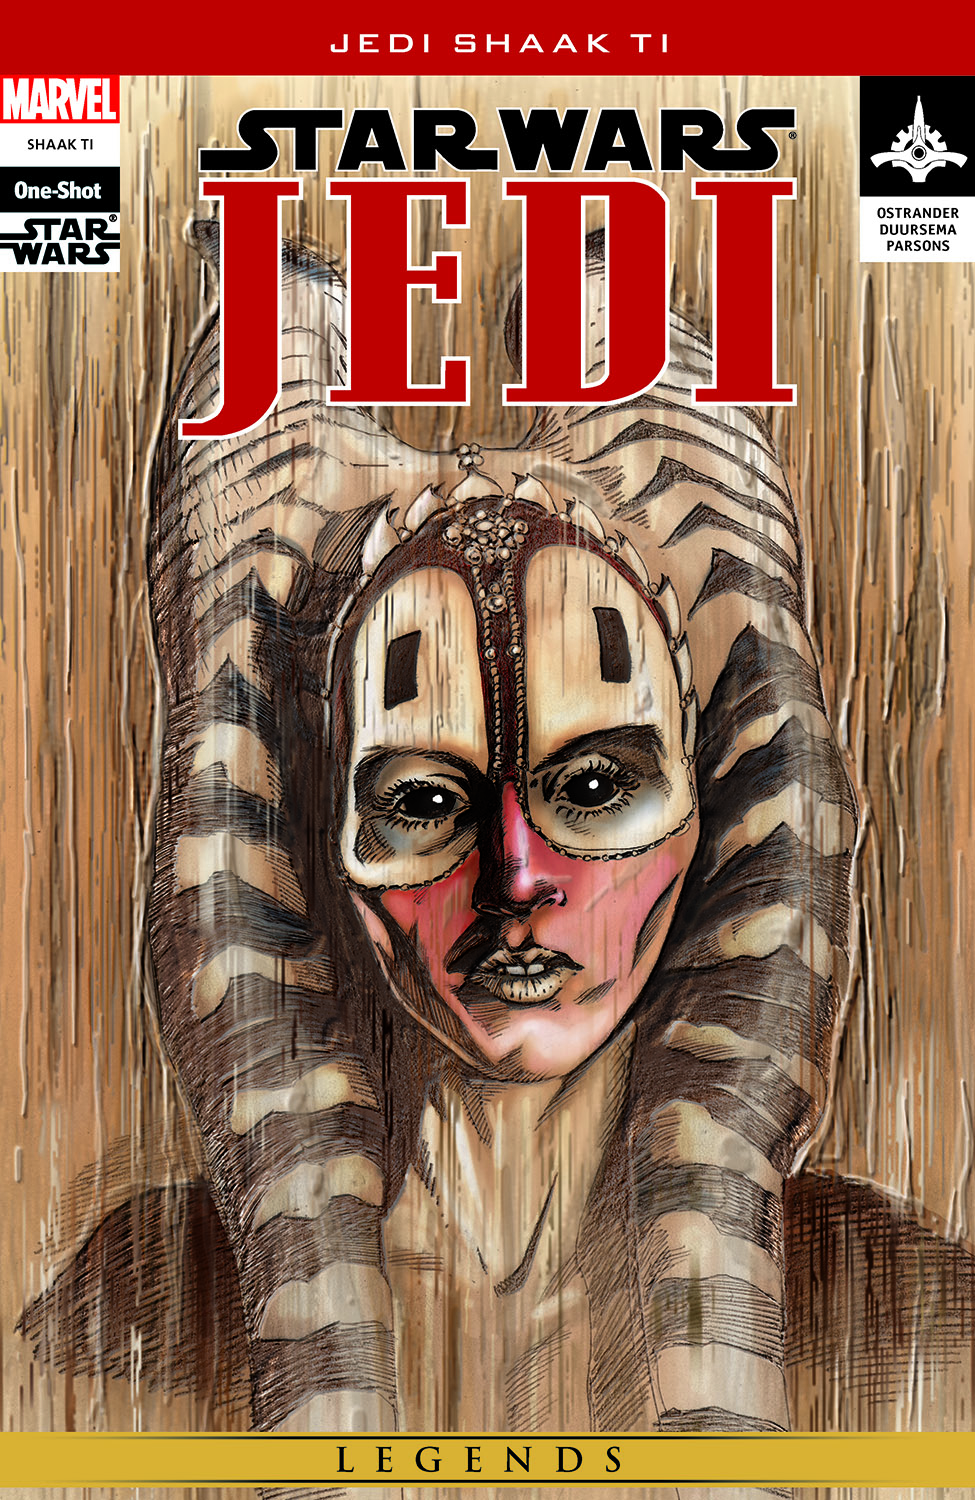 Star Wars: Jedi - Shaak Ti (2003) #1